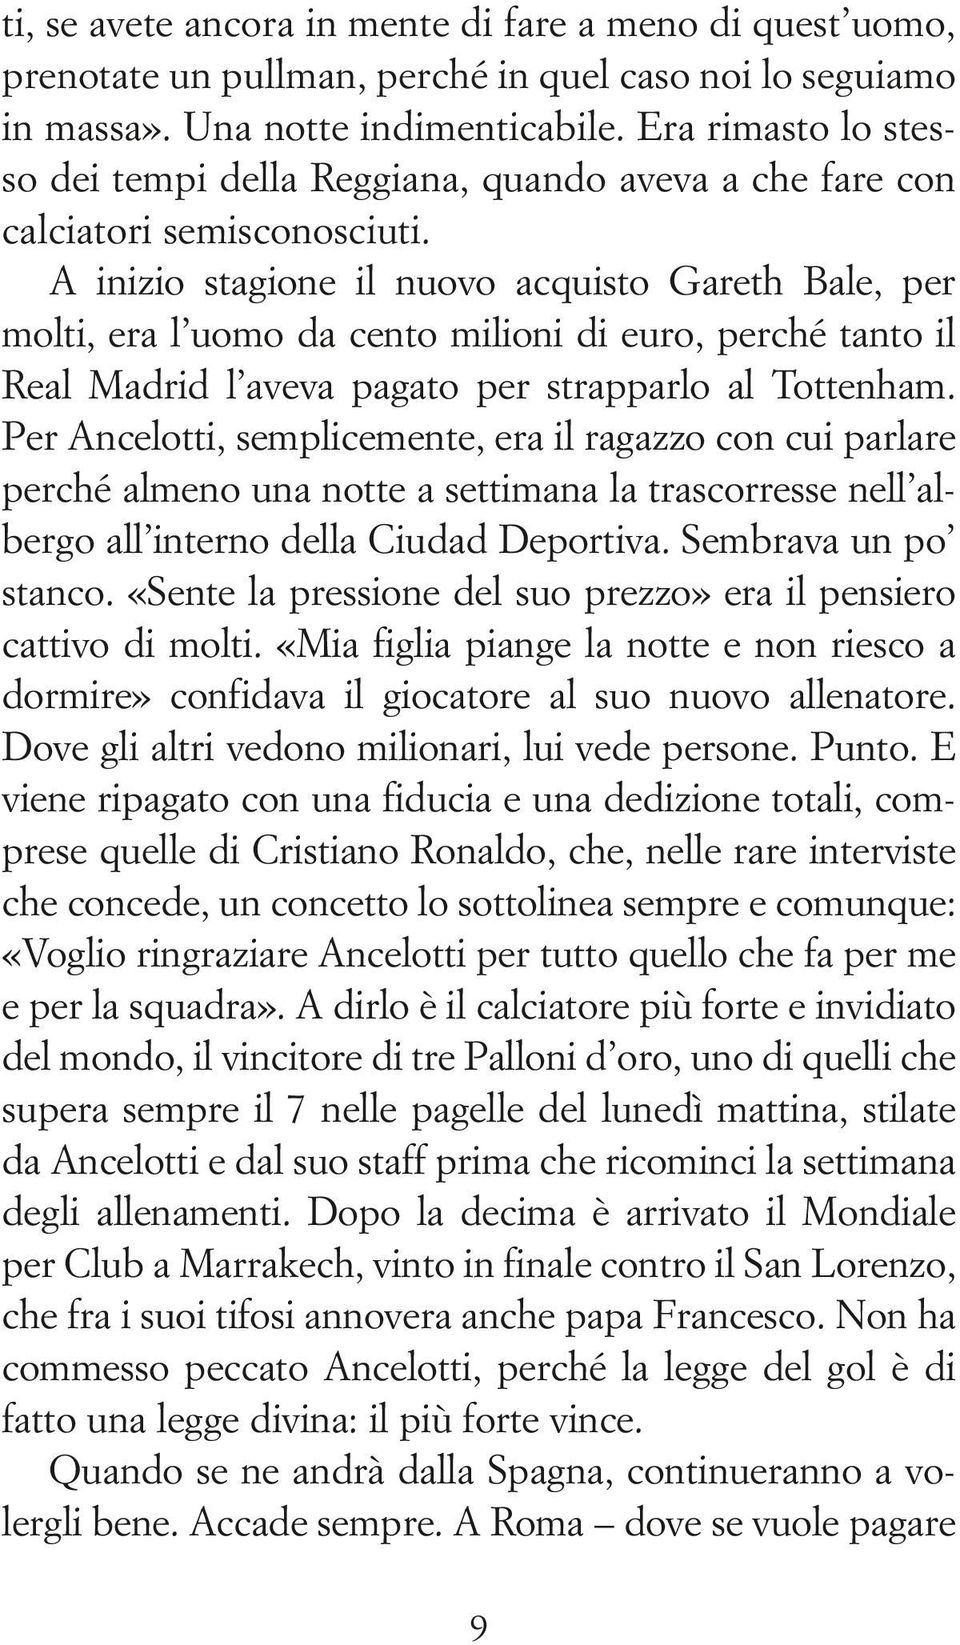 A inizio stagione il nuovo acquisto Gareth Bale, per molti, era l uomo da cento milioni di euro, perché tanto il Real Madrid l aveva pagato per strapparlo al Tottenham.